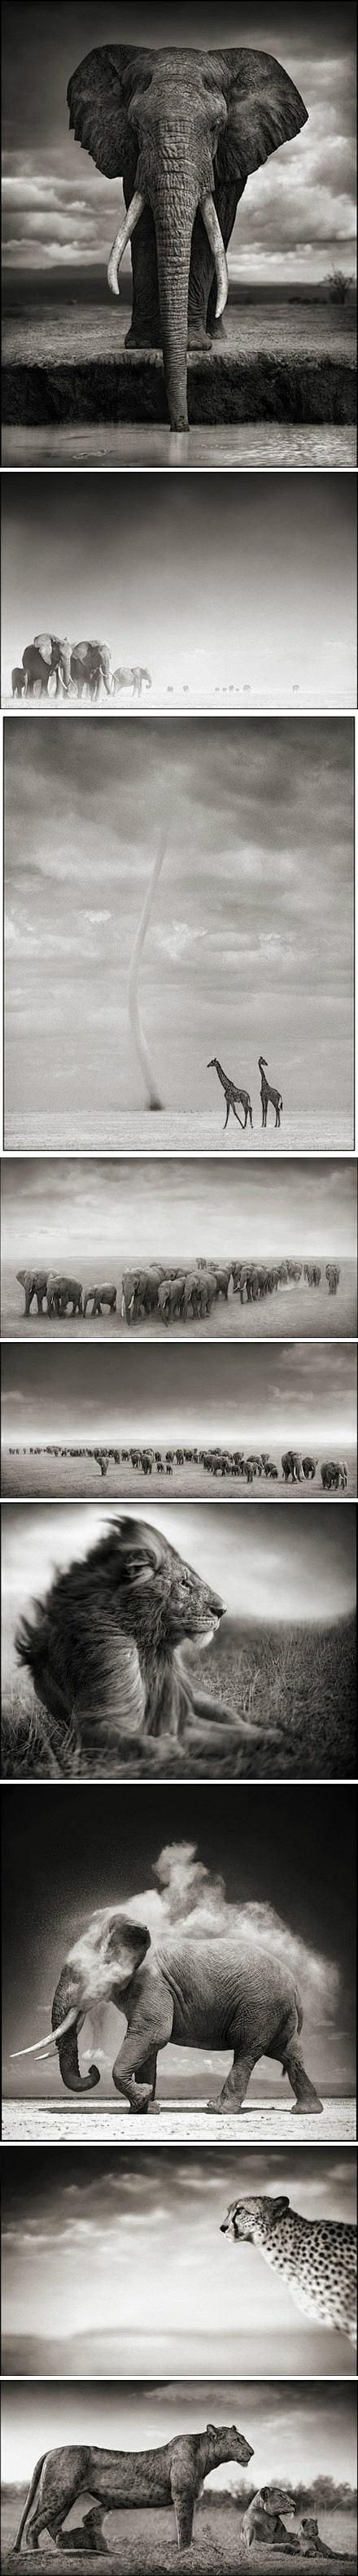 
【魂归大地】“非洲的野生动物从未像照...